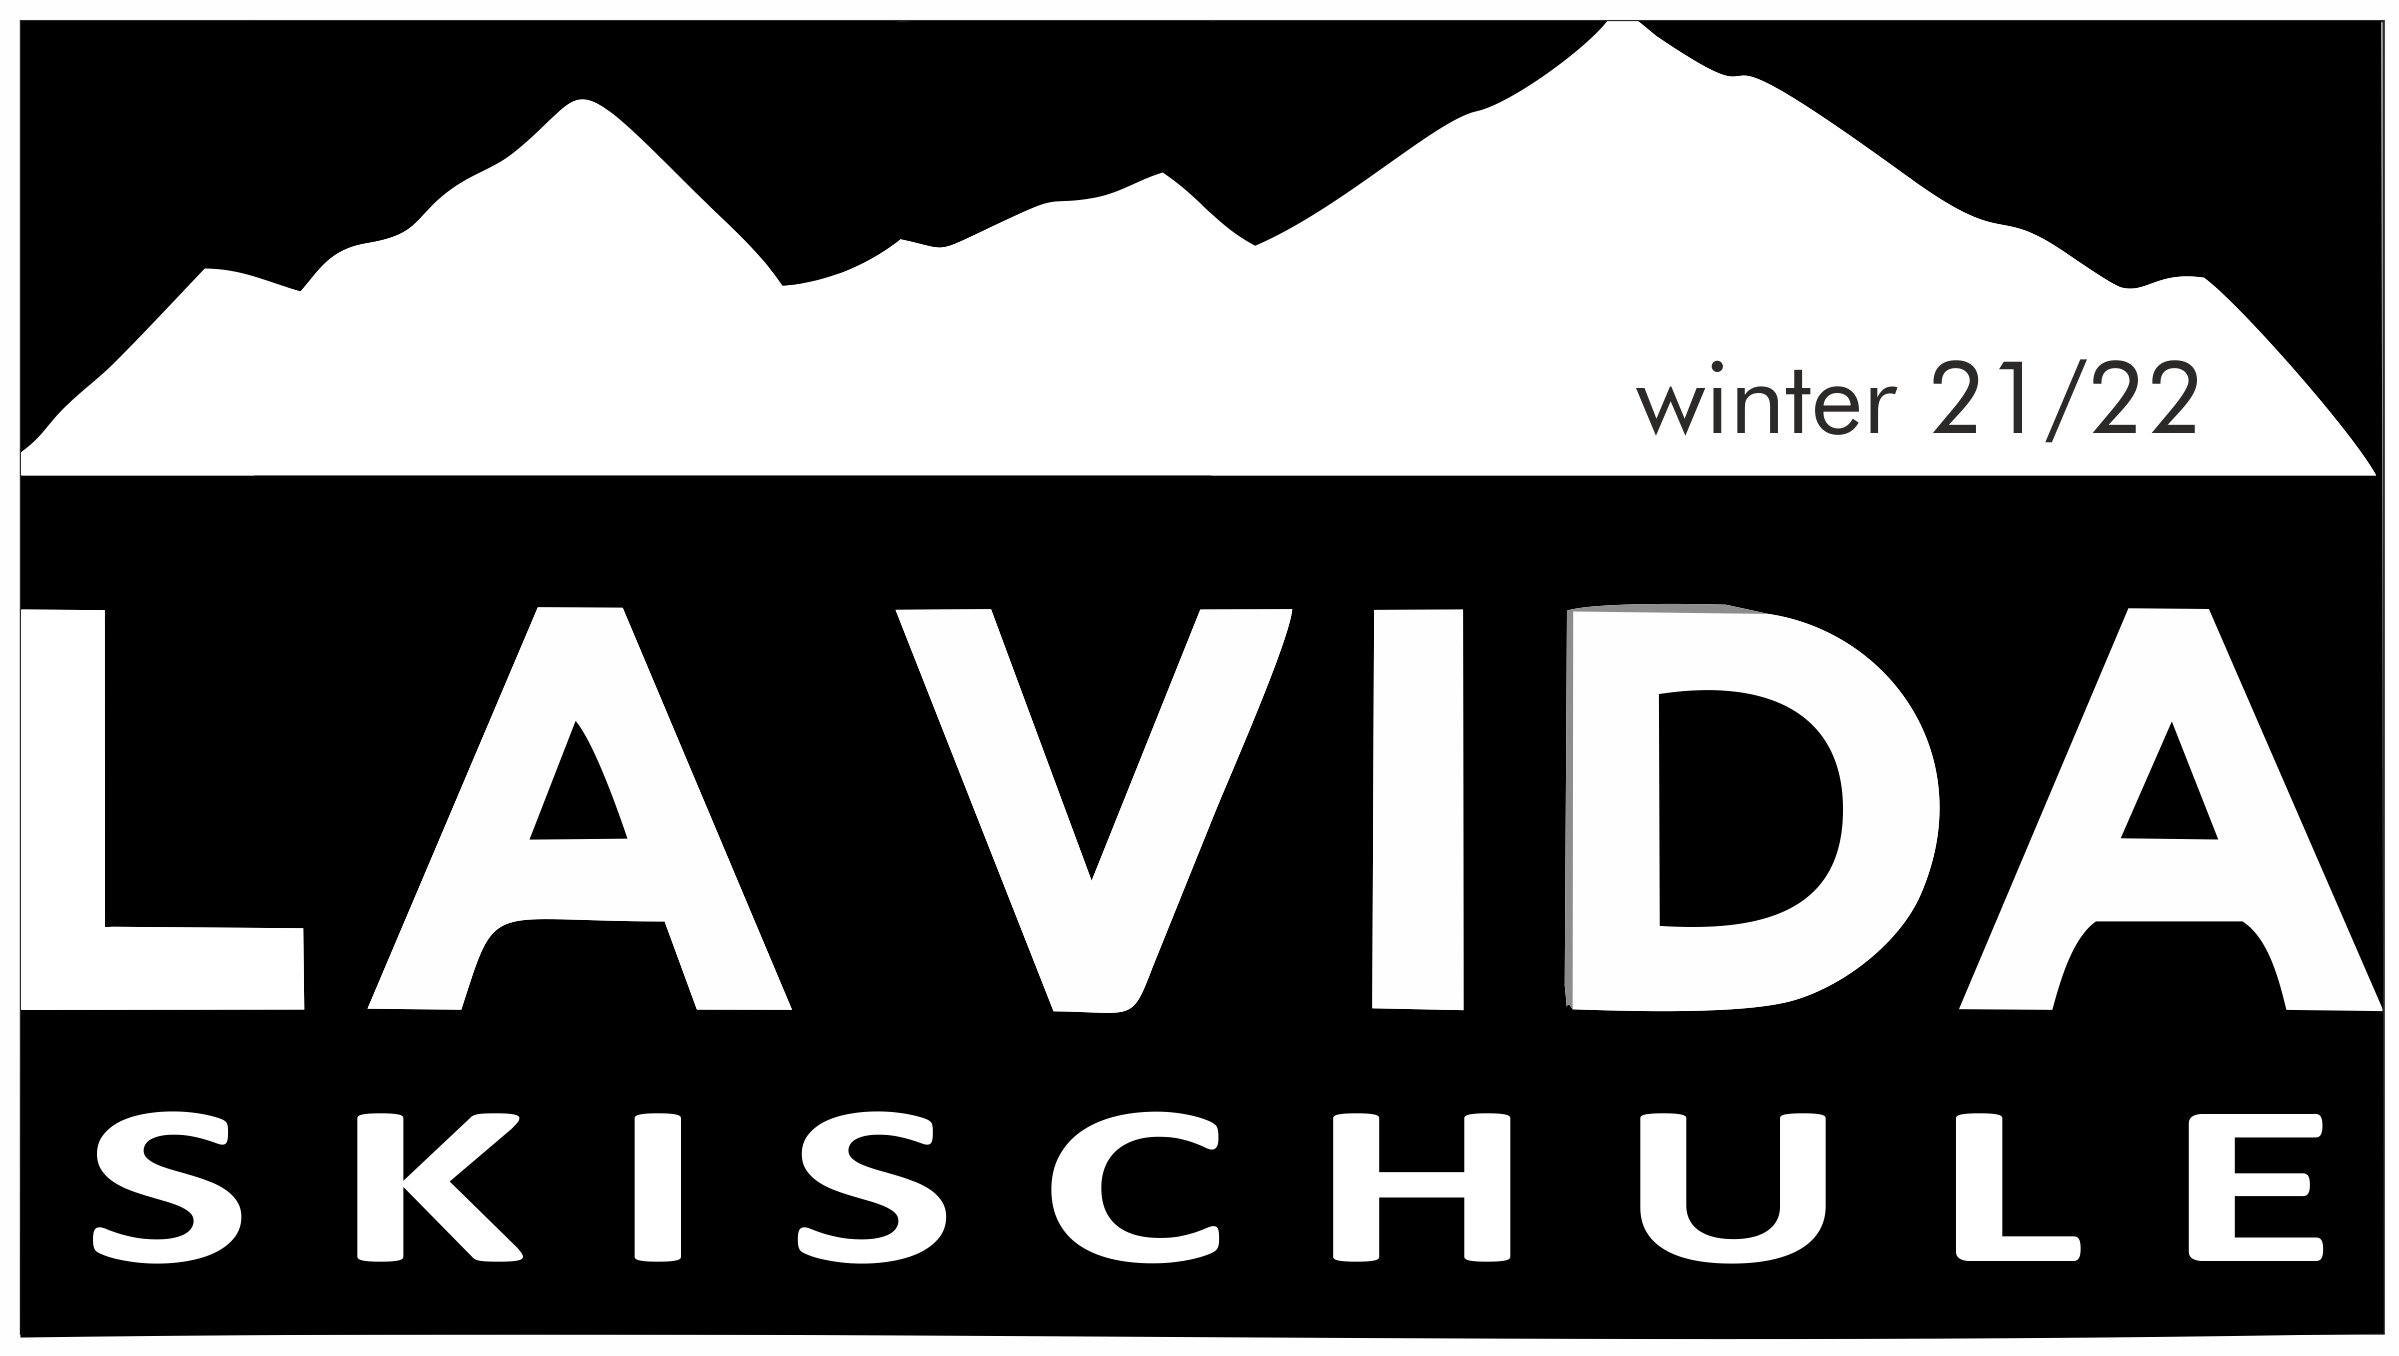 Lavida Skischule